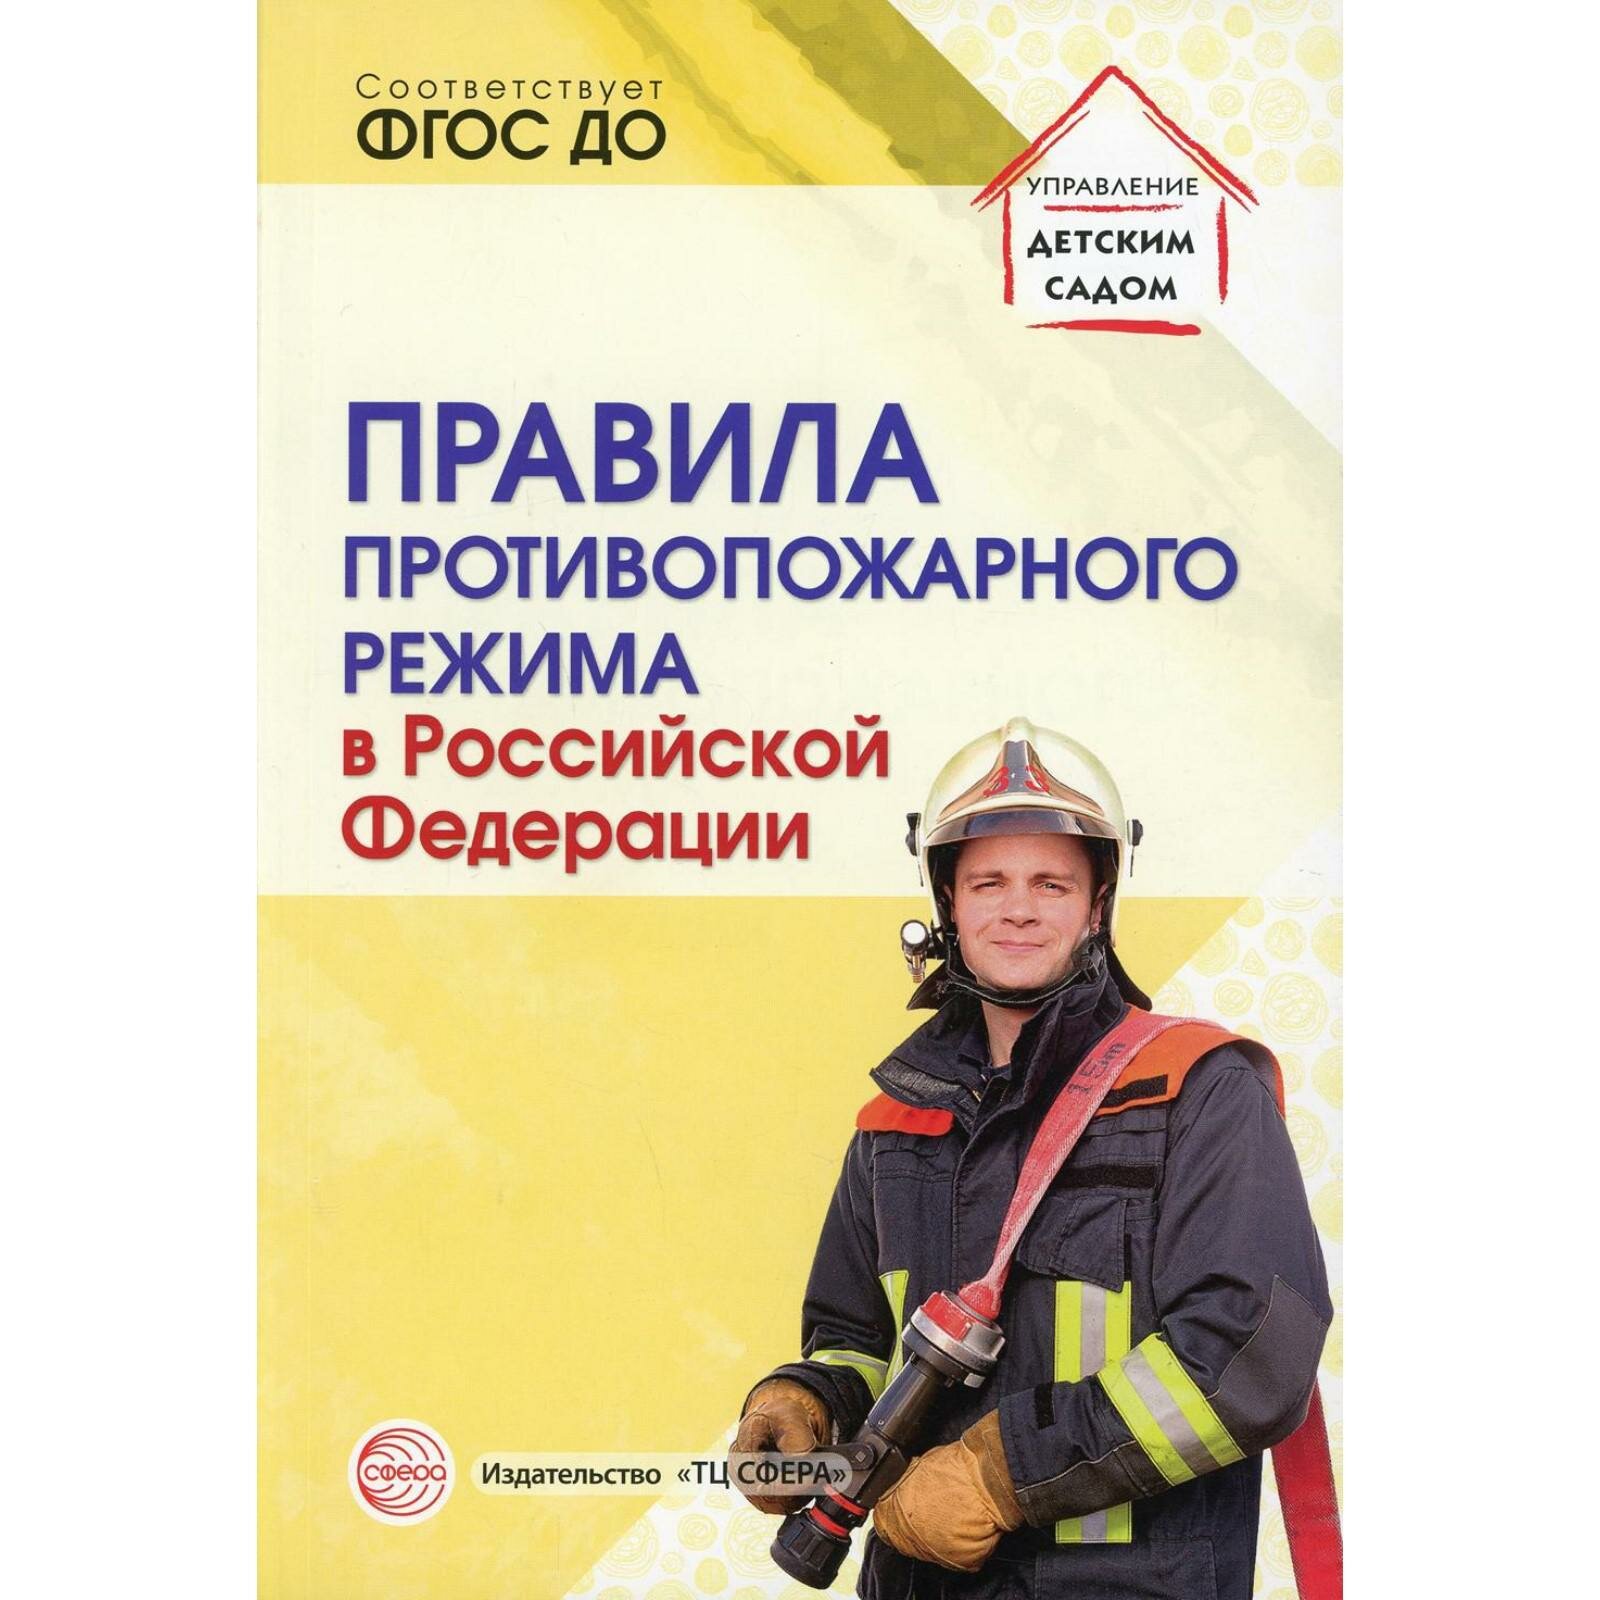 Правила противопожарного режима в Российской Федерации - фото №2